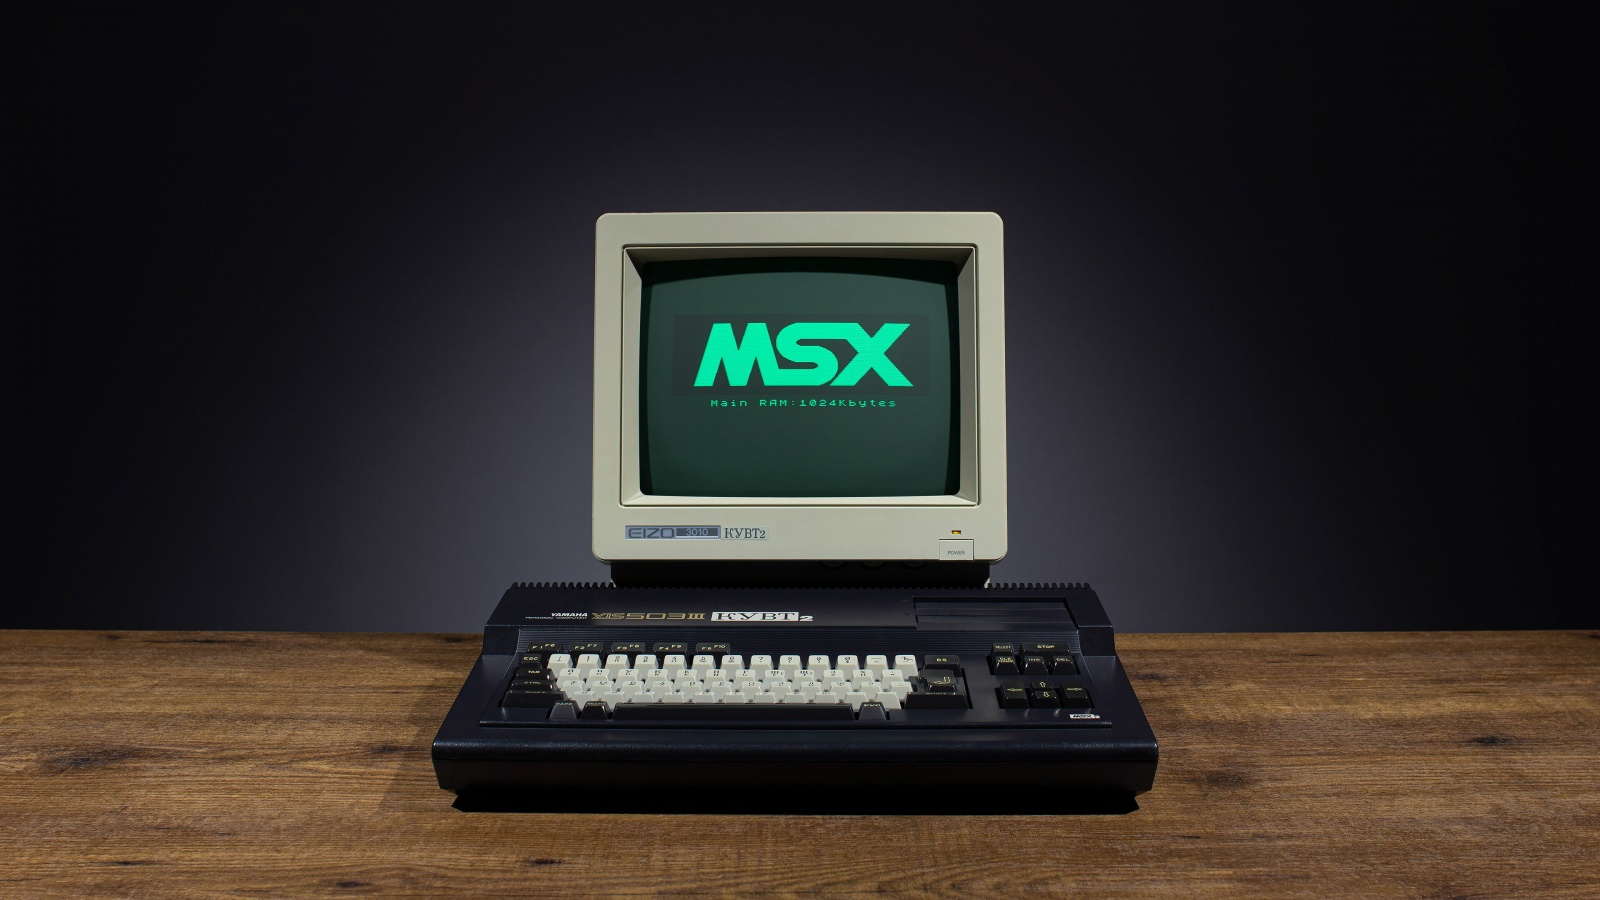 41 год платформе MSX. Компьютеры, на которых выросли поколения - 1